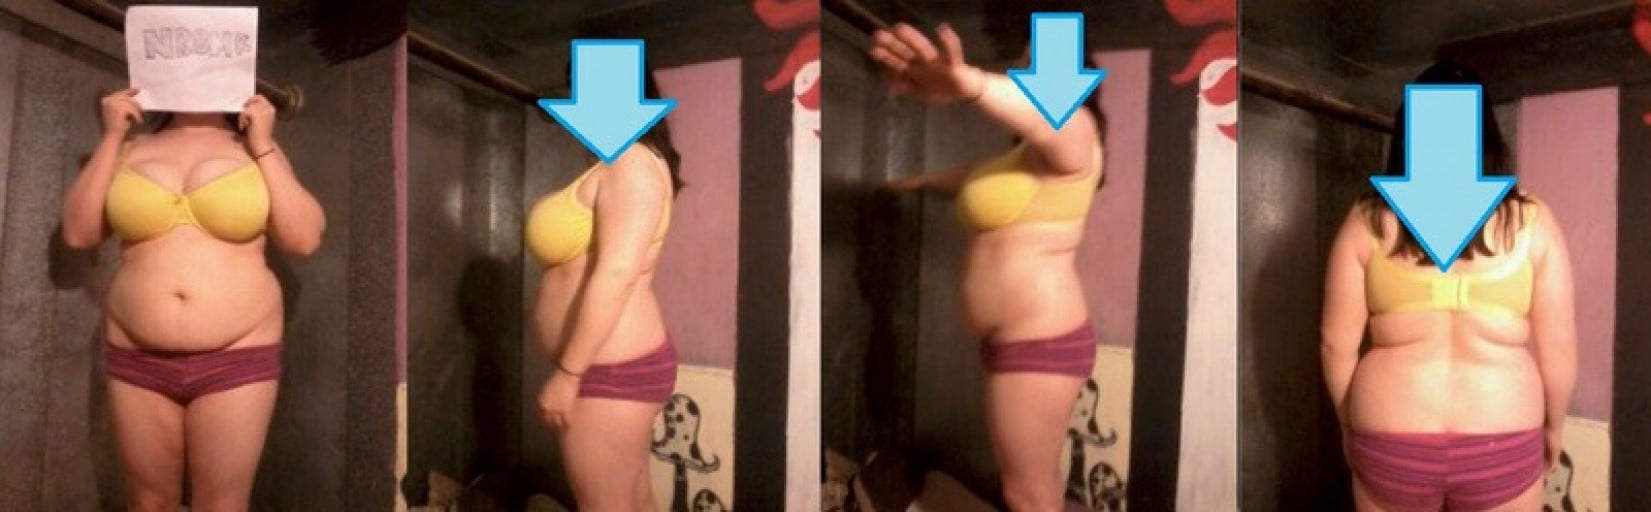 How One User Lost Weight: Bellehbellehbelleh's Journey